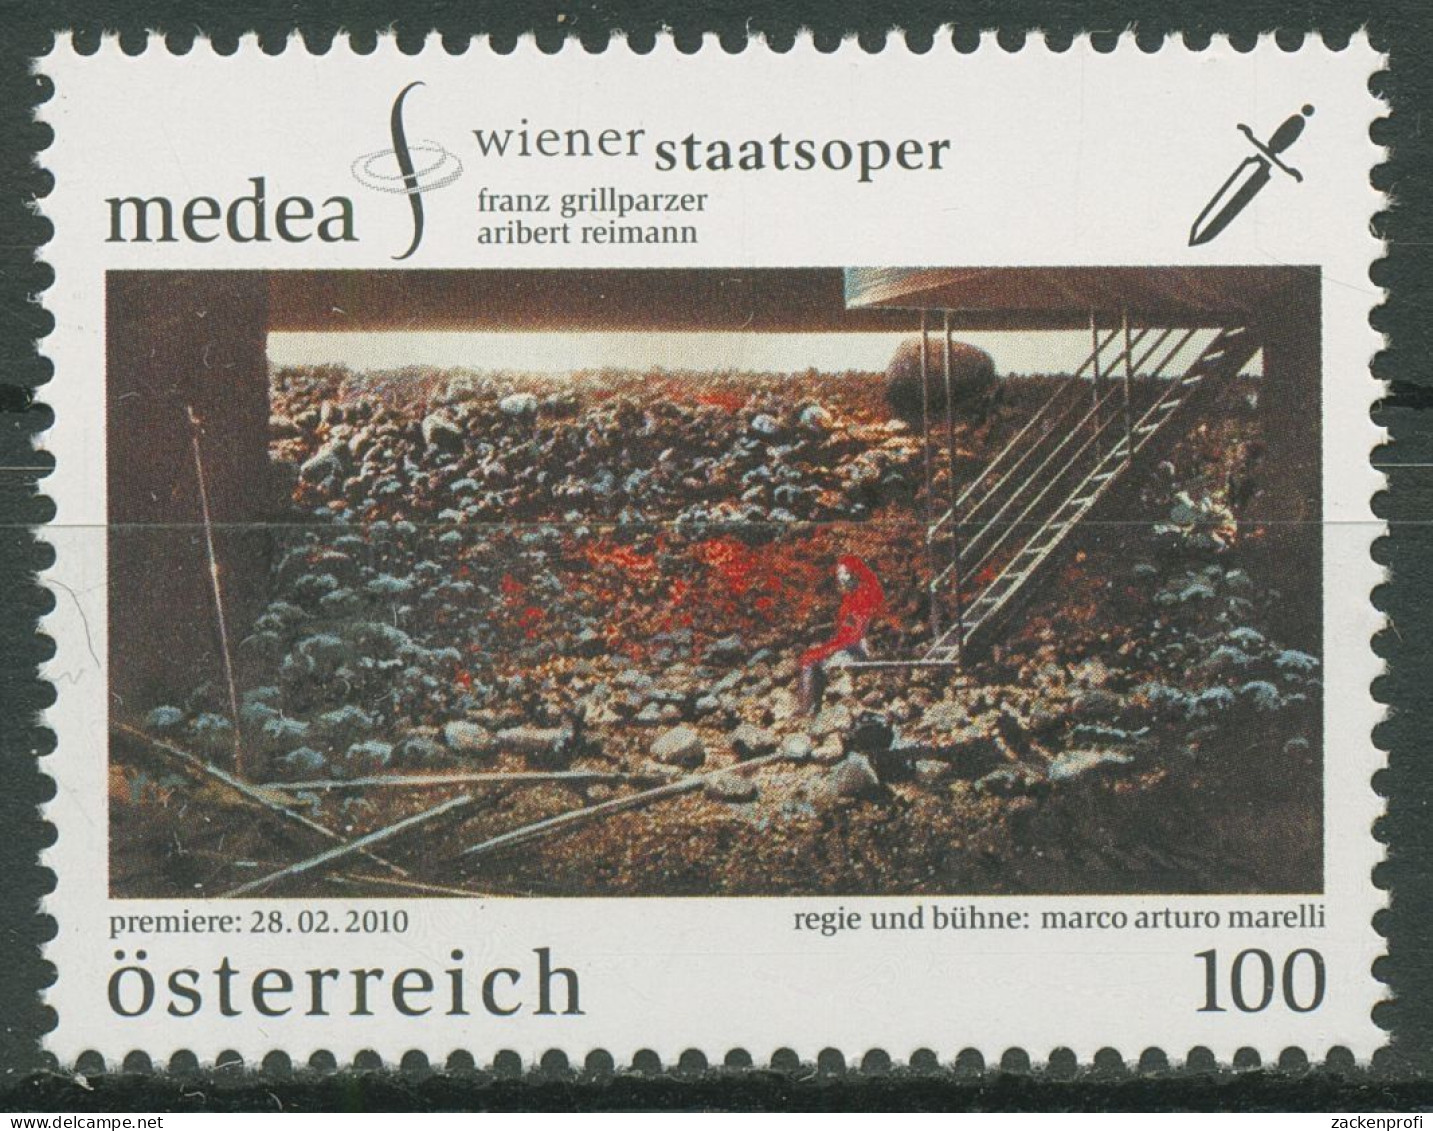 Österreich 2010 Wiener Staatsoper "Medea" 2857 Postfrisch - Ungebraucht